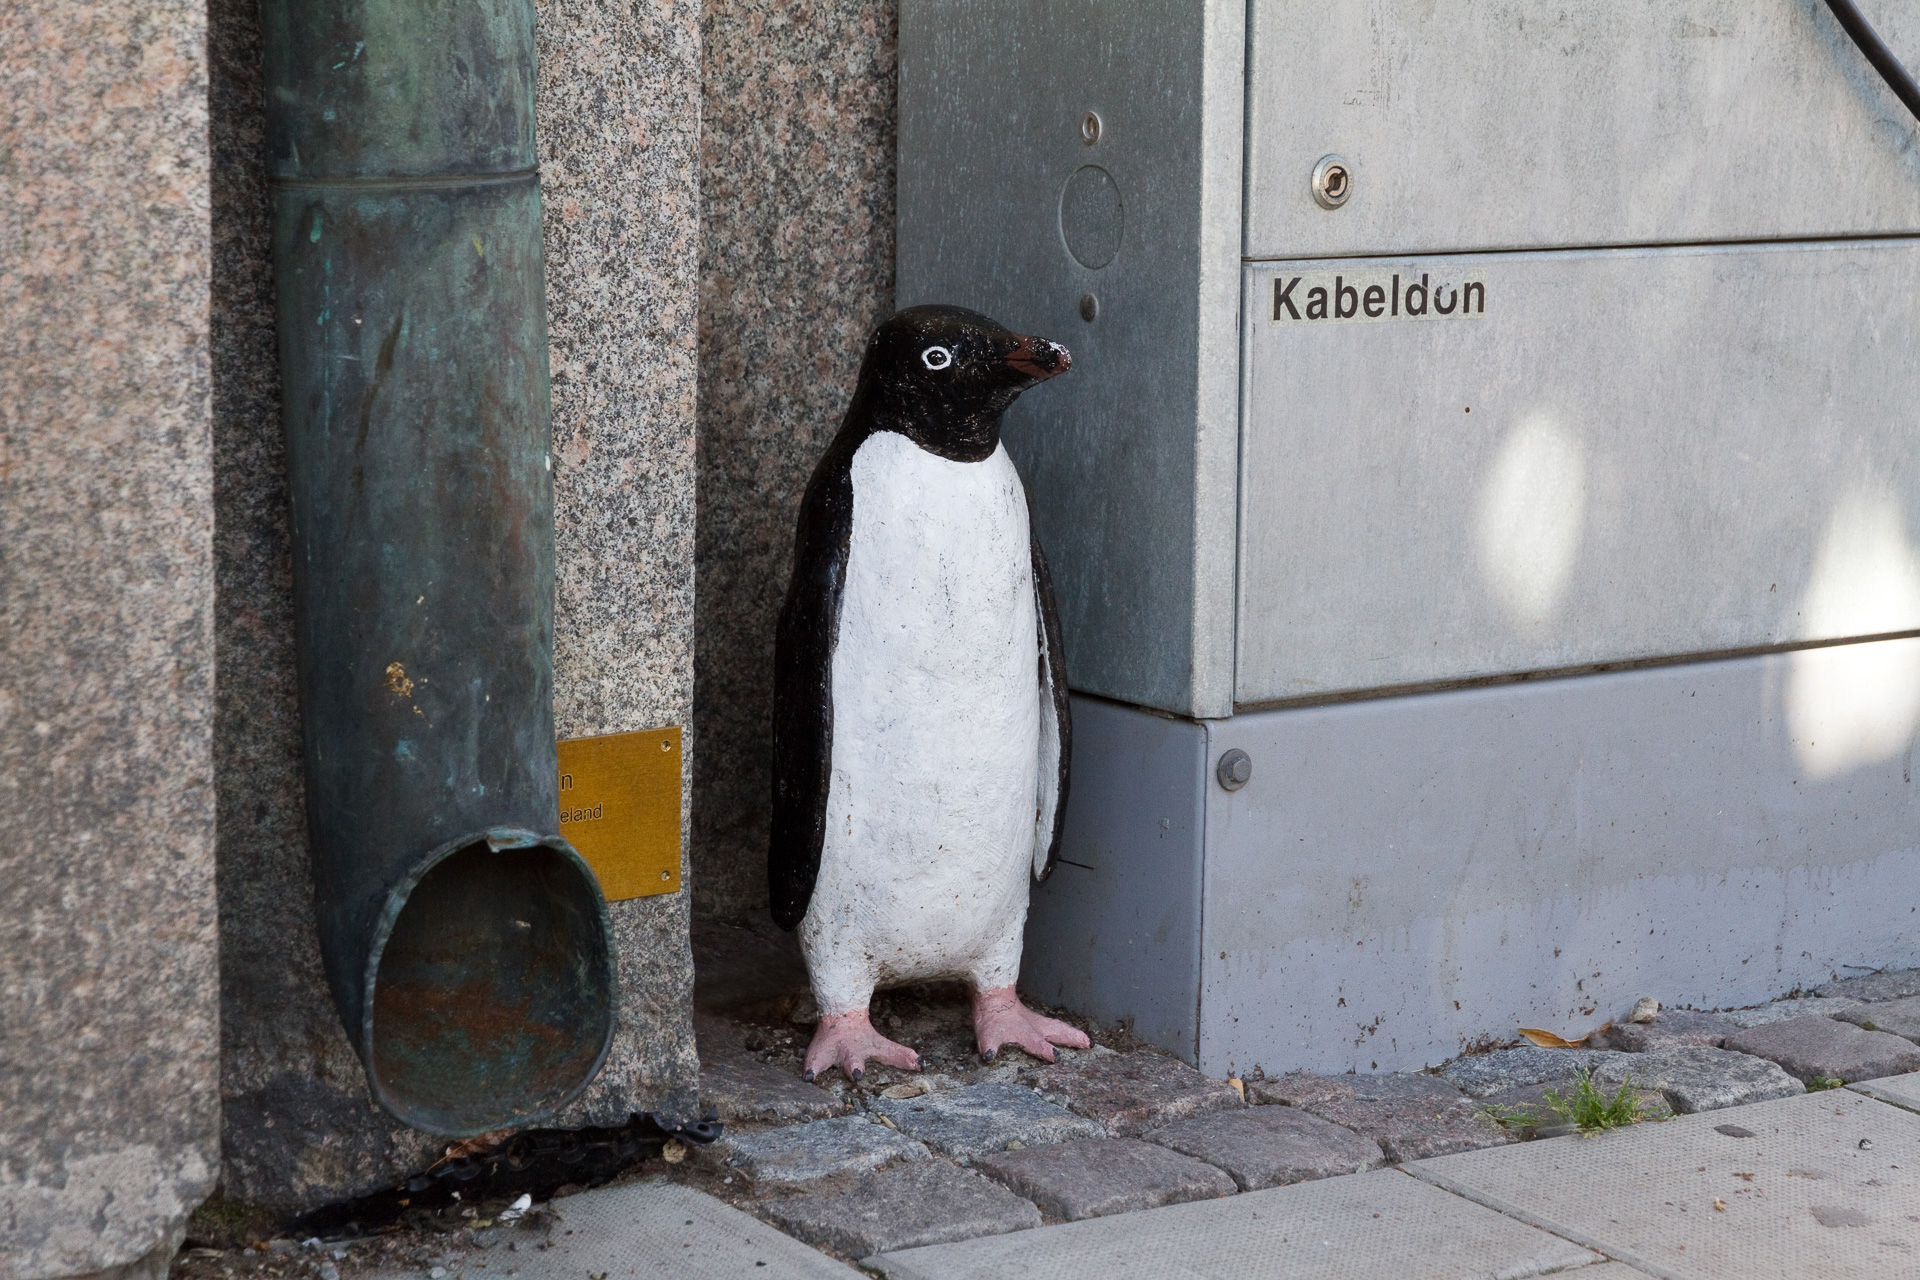 En liten pingvin stående dold bredvid ett elskåp.